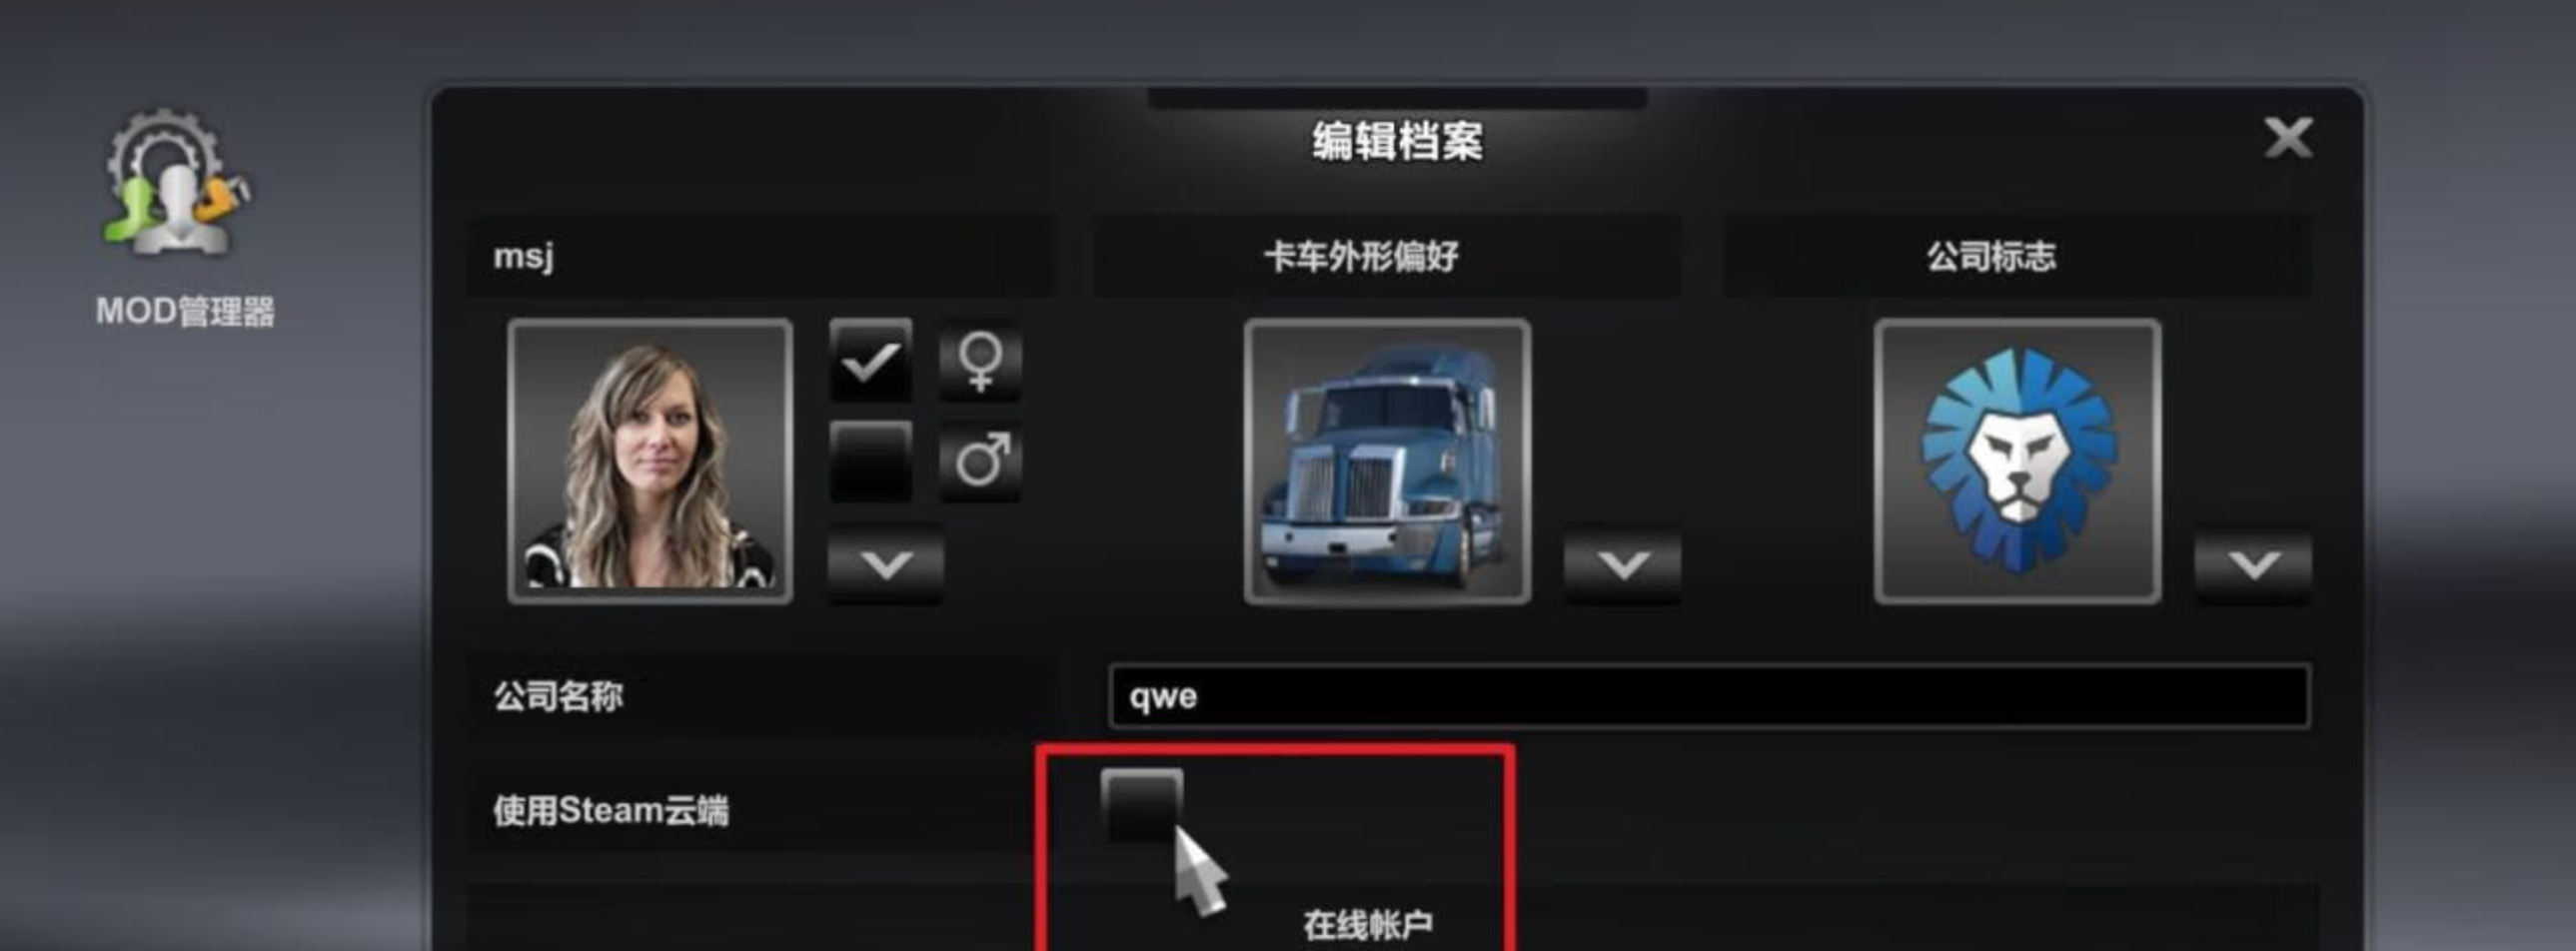 欧洲卡车模拟2 Euro Truck Simulator 2 for Mac v1.49.2.23s 中文原生版 含全部DLC-1